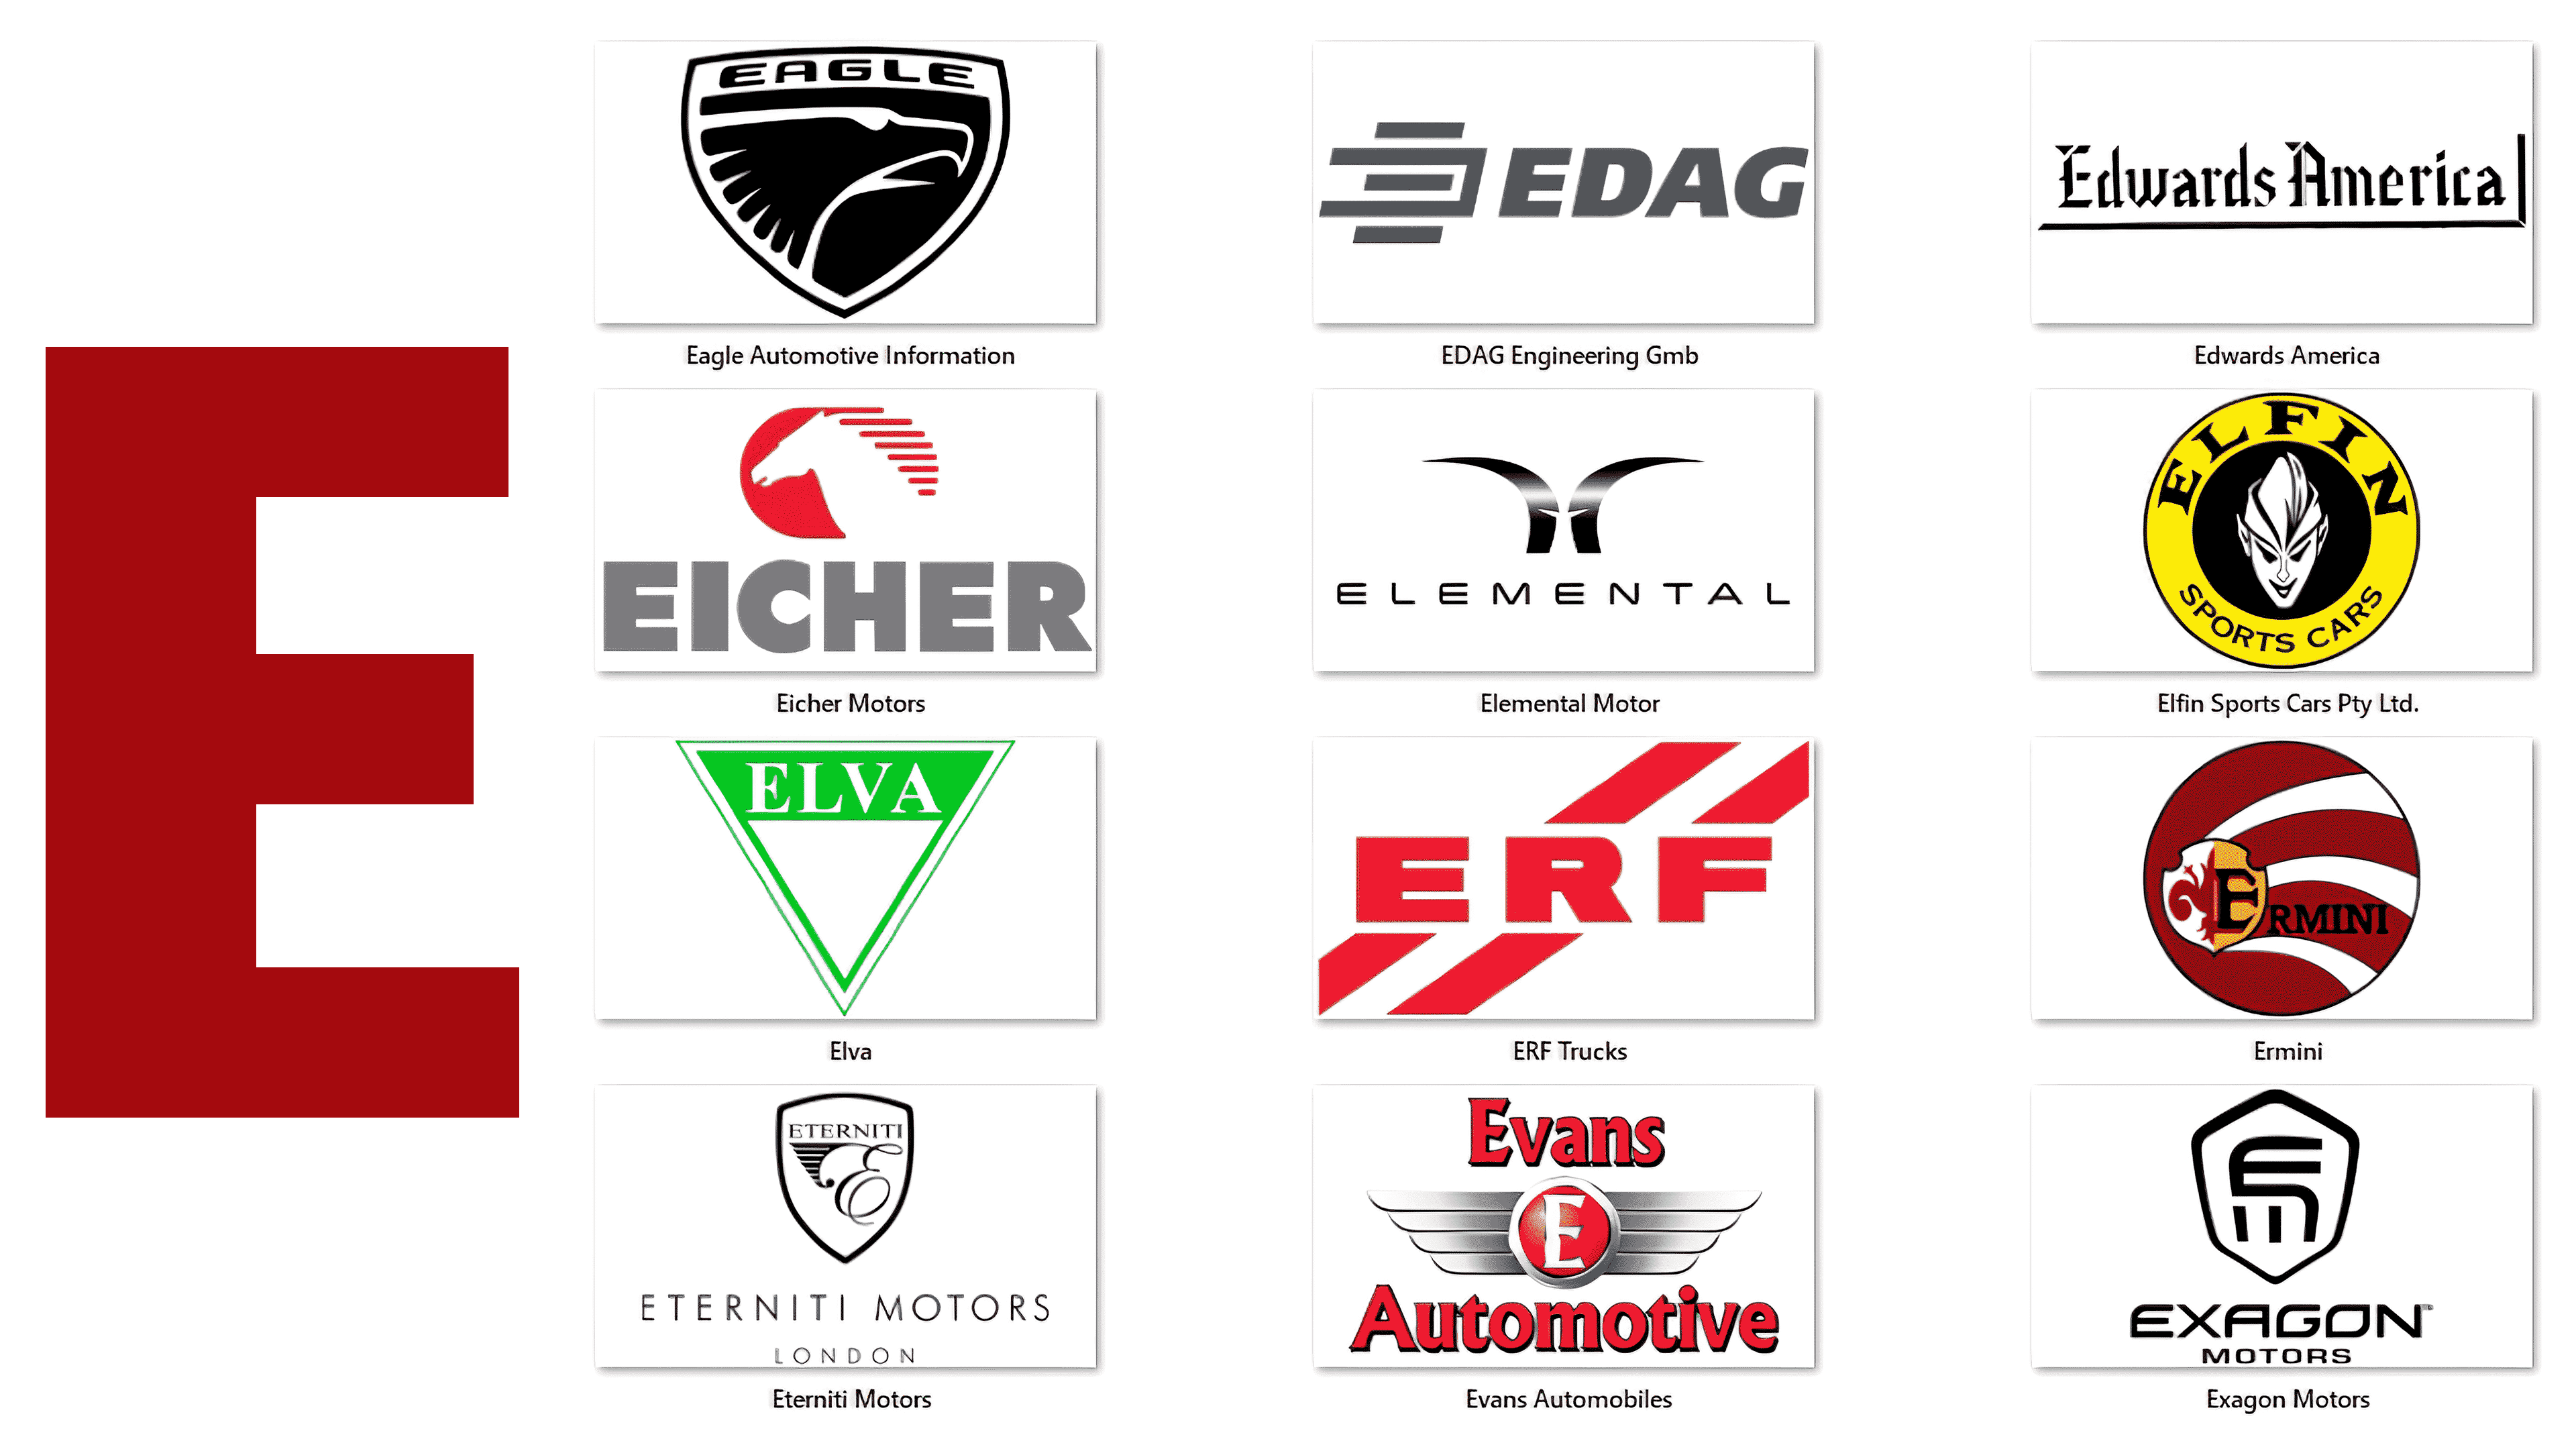 e-inform, Cars Logo